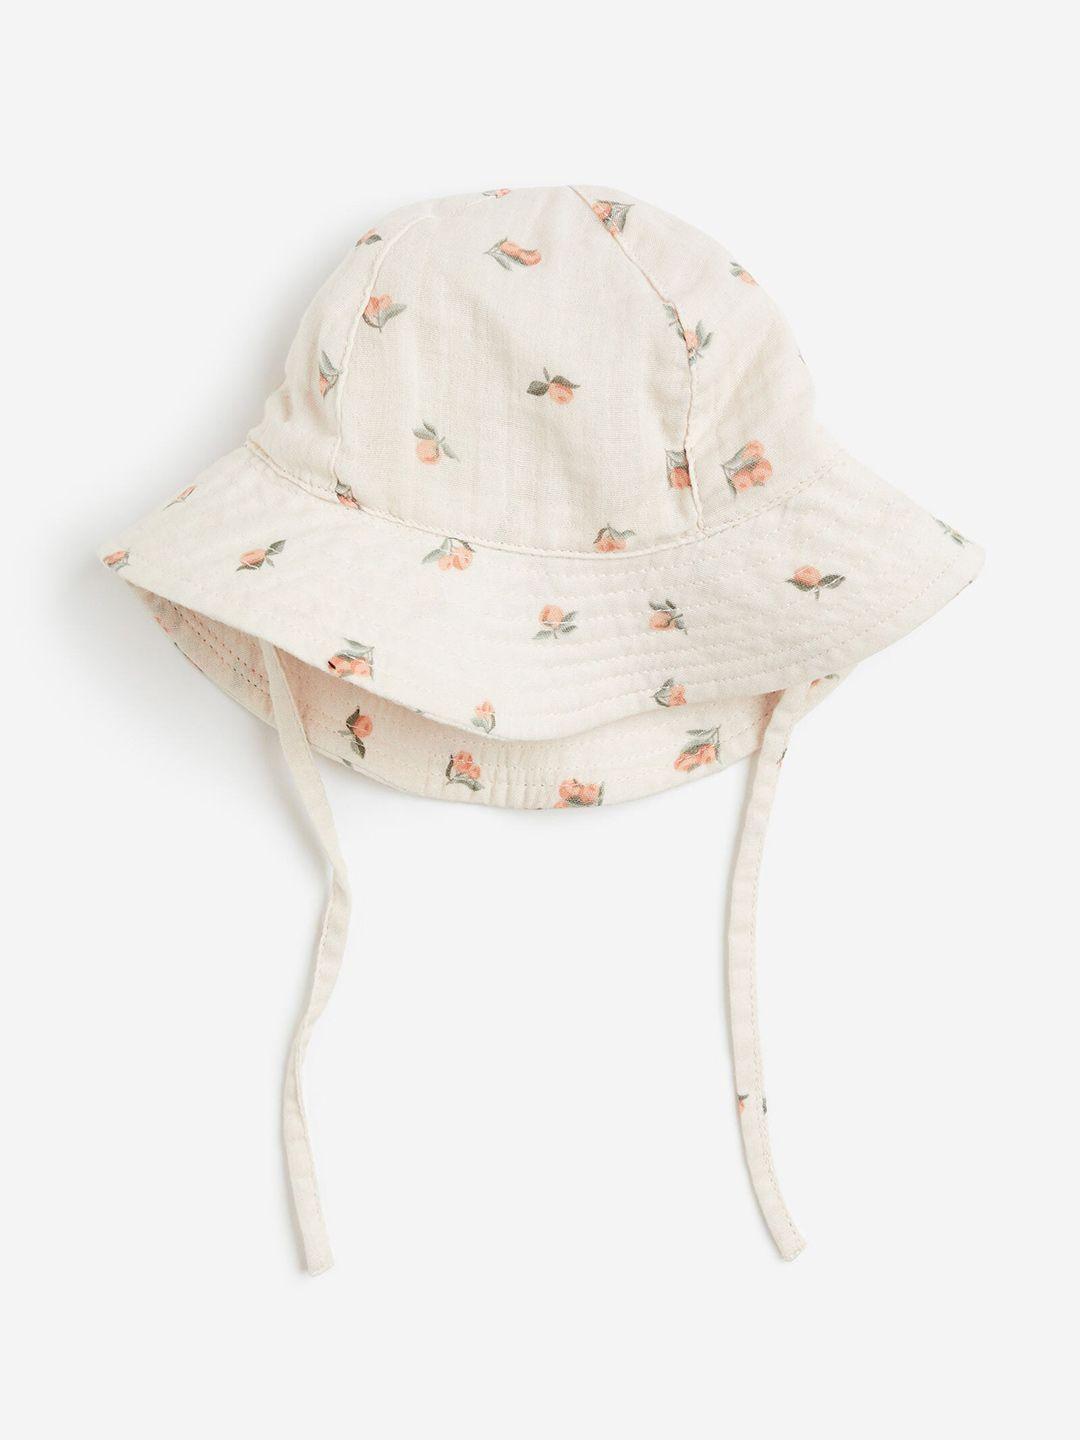 h&m infant boys pure cotton sun hat